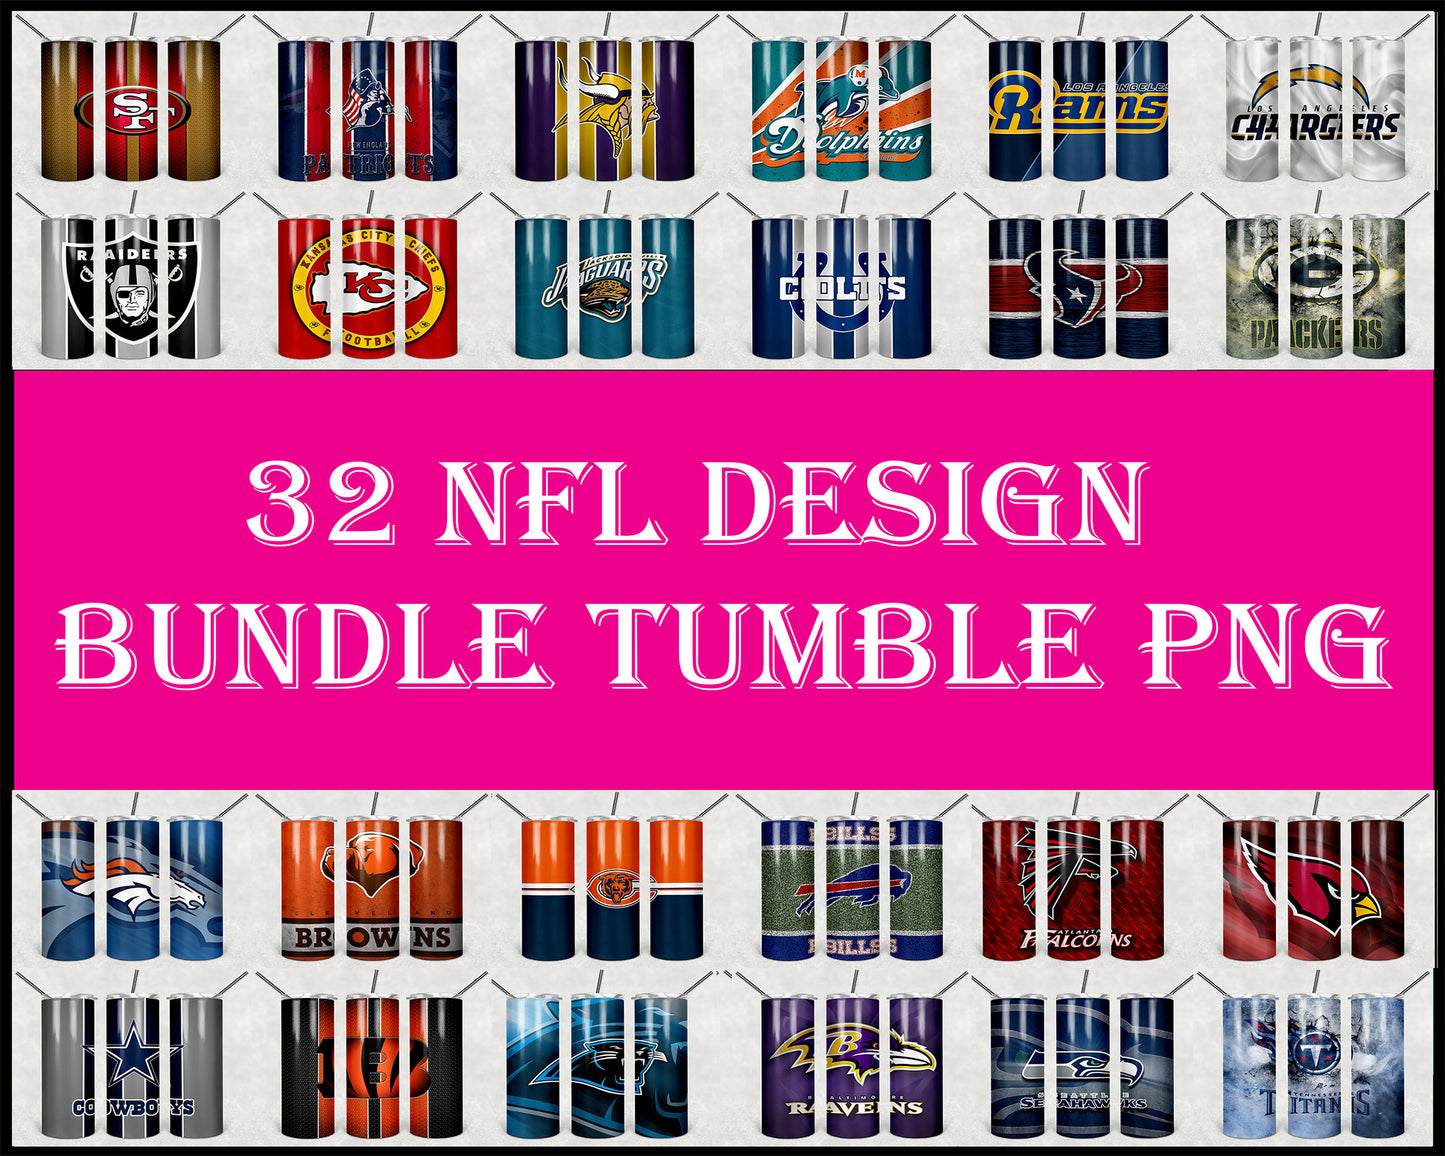 24000+ file tumbler Tumbler Designs Bundle PNG High Quality, Designs 20 oz sublimation, Bundle Design Template for Sublimation